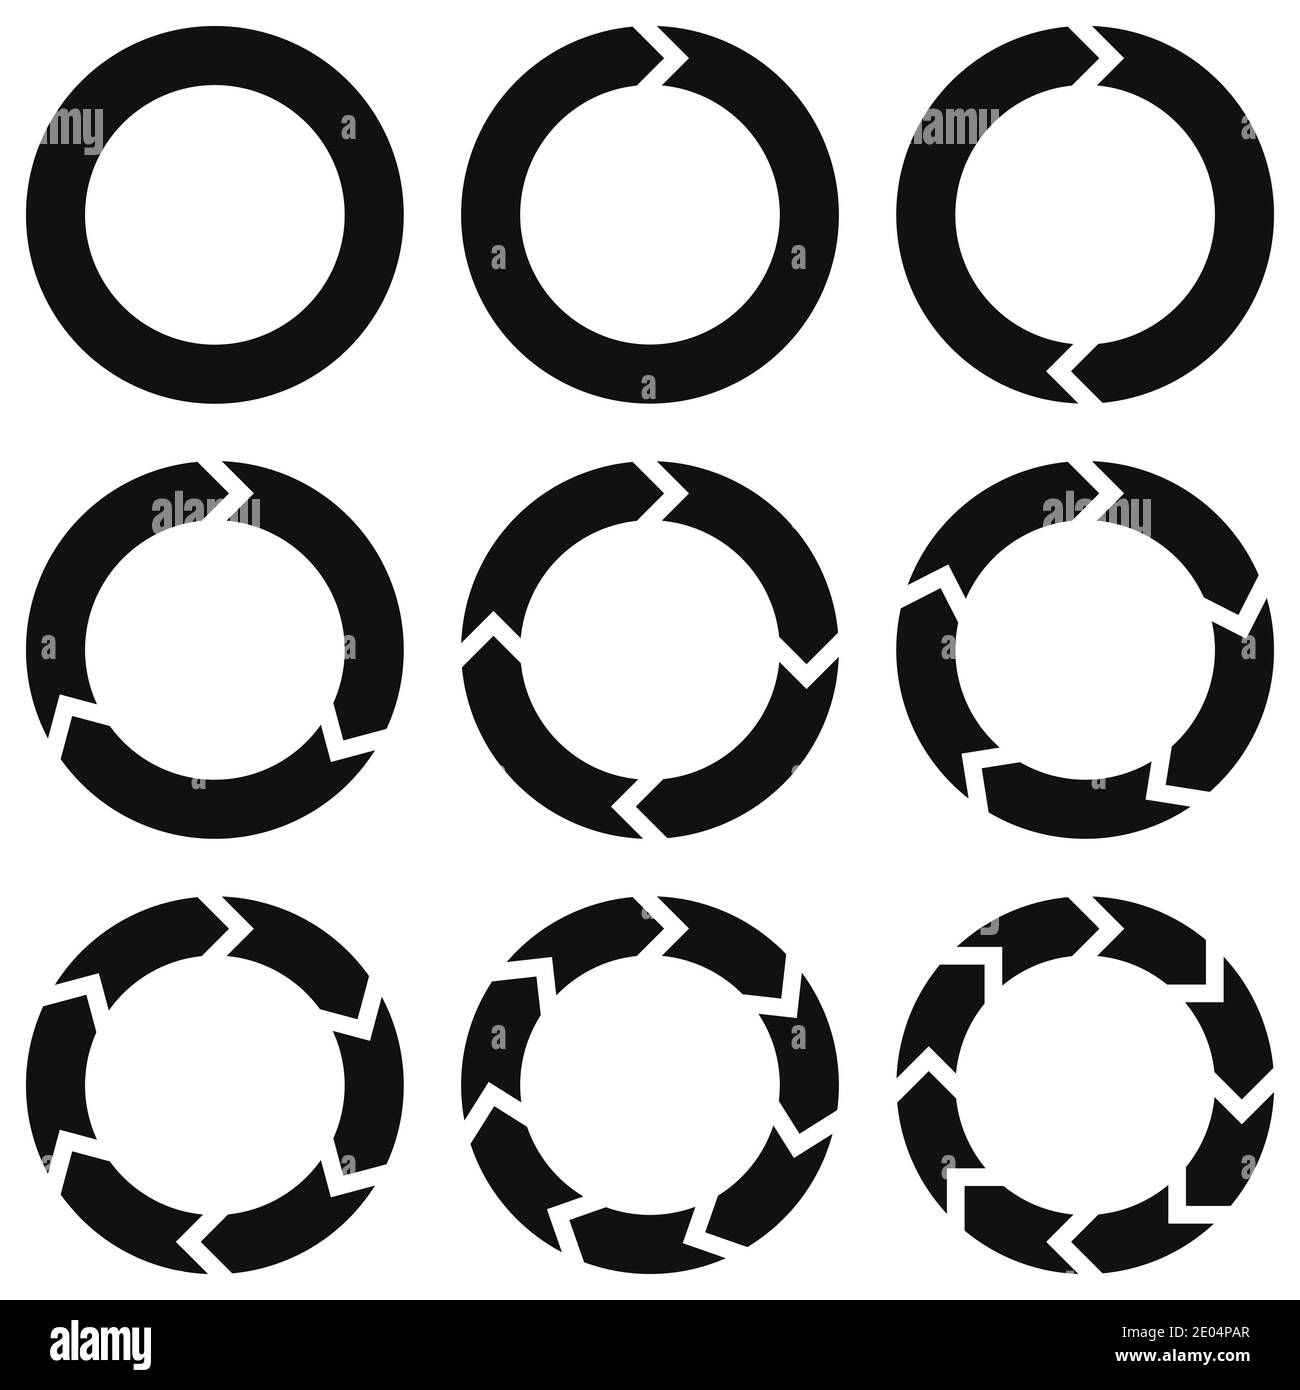 modèle d'éléments infographiques ronds flèches circulaires de rotation, vecteur d'infographie sur les énergies renouvelables, mouvement circulaire de recyclage et de renouvellement Illustration de Vecteur